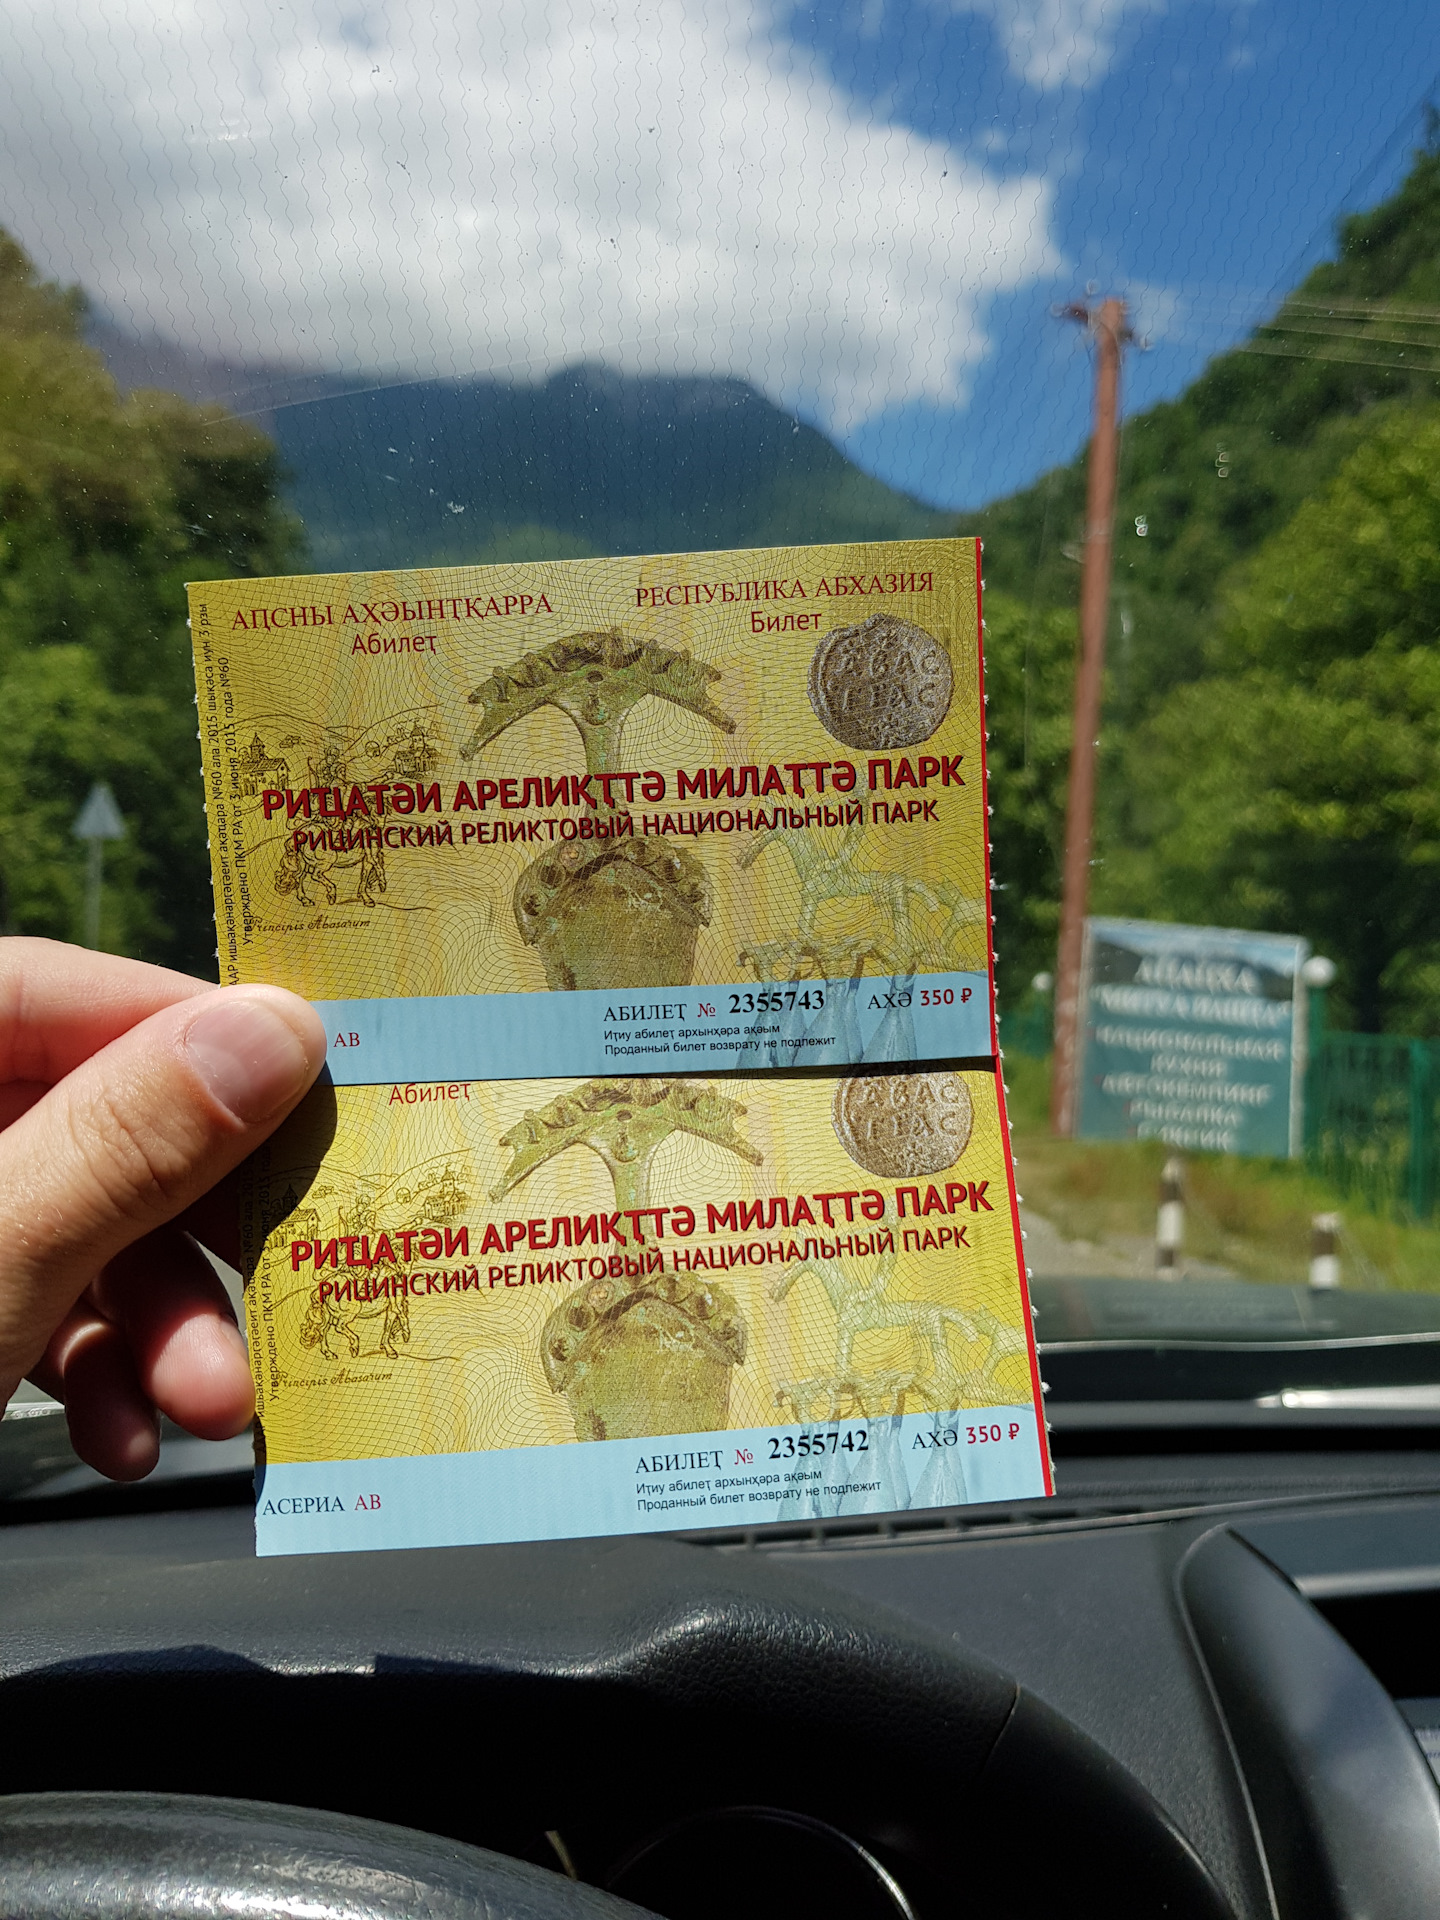 Сколько билет до абхазии. Рицинский реликтовый национальный парк билет. Билеты в Абхазию. Абхазия билеты на самолет. Билет на самолет до Абхазии.